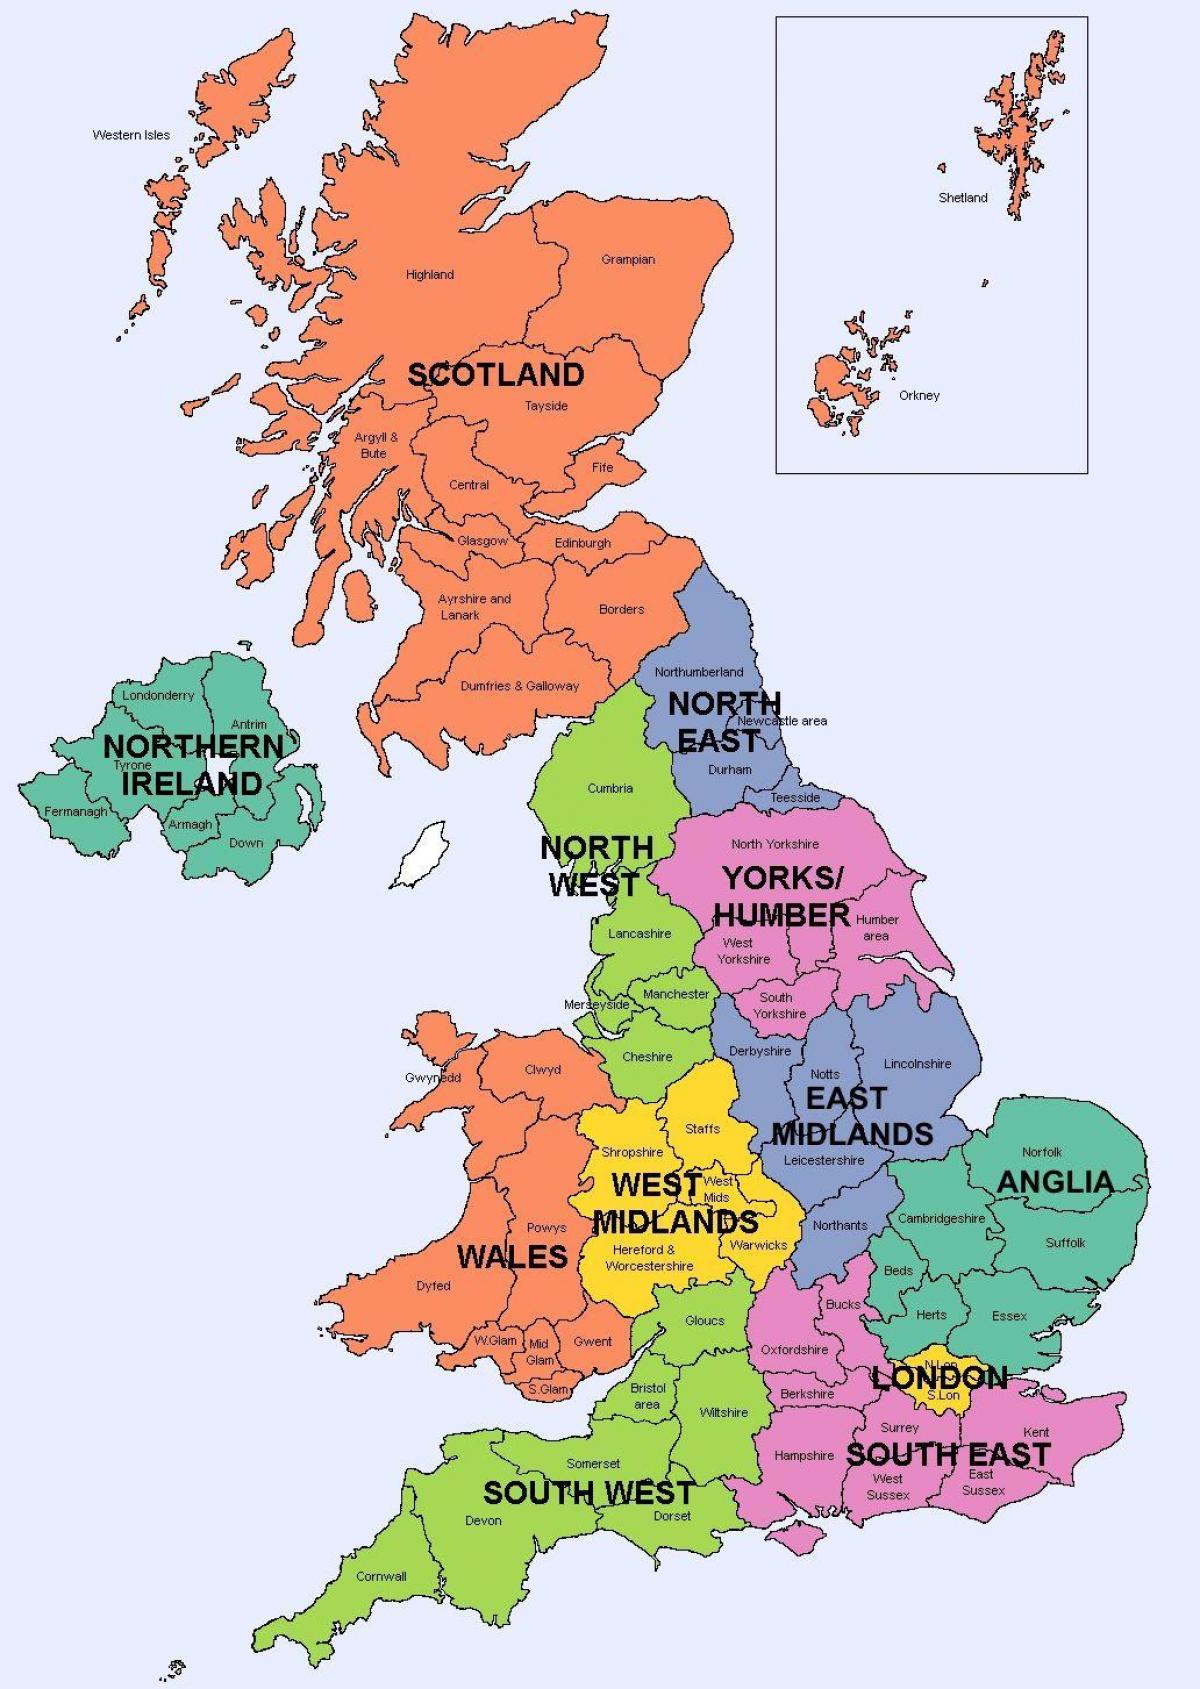 イギリス連邦共和国 Uk の領域の地図 イギリス連邦共和国 Uk の政治と国家の地図